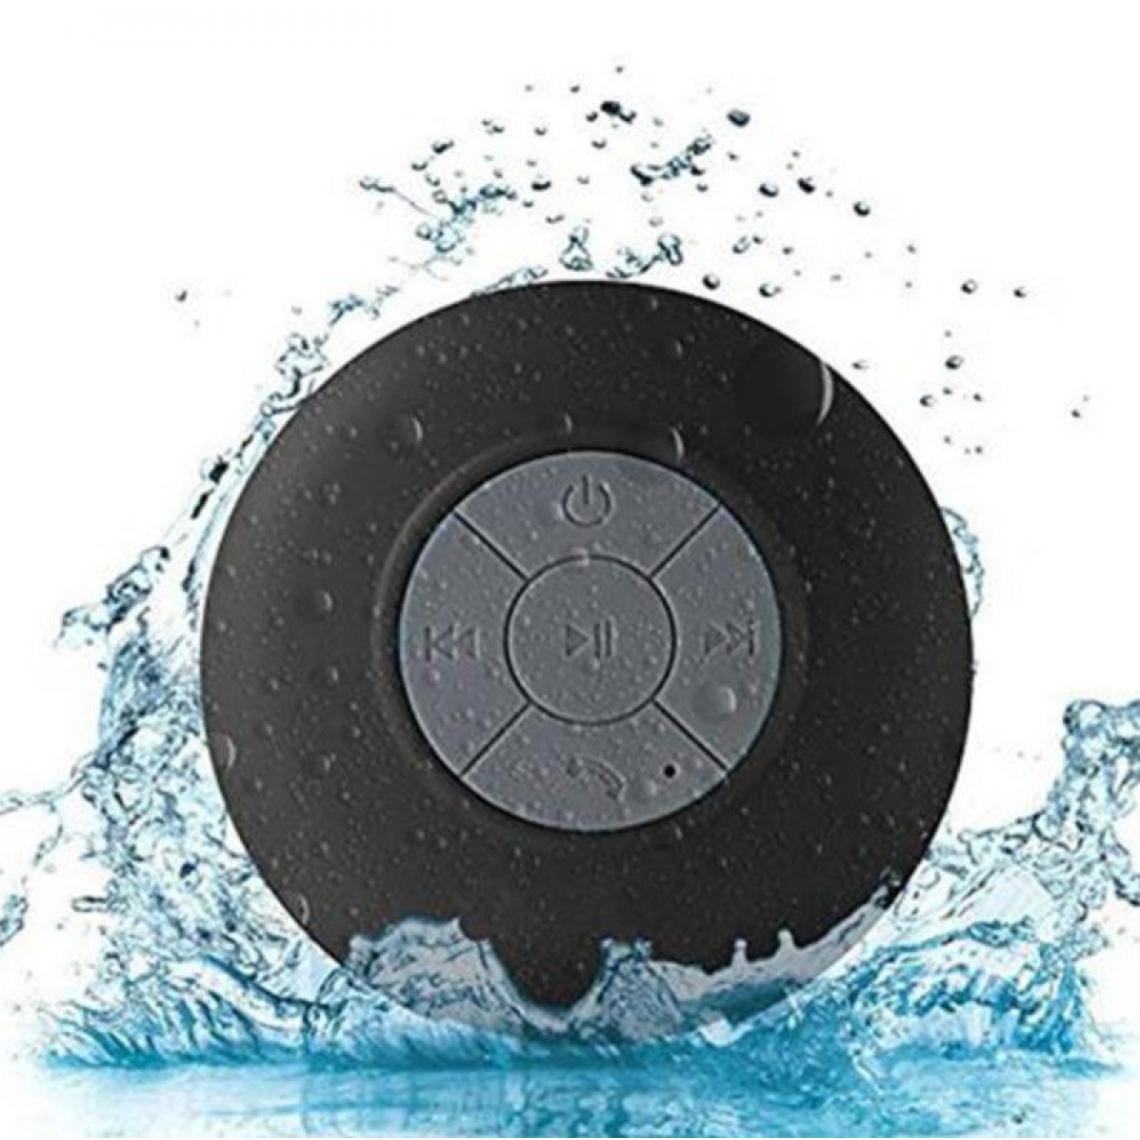 Shot - Enceinte Waterproof Bluetooth pour ONEPLUS 7 Smartphone Ventouse Haut-Parleur Micro Douche Petite (NOIR) - Autres accessoires smartphone